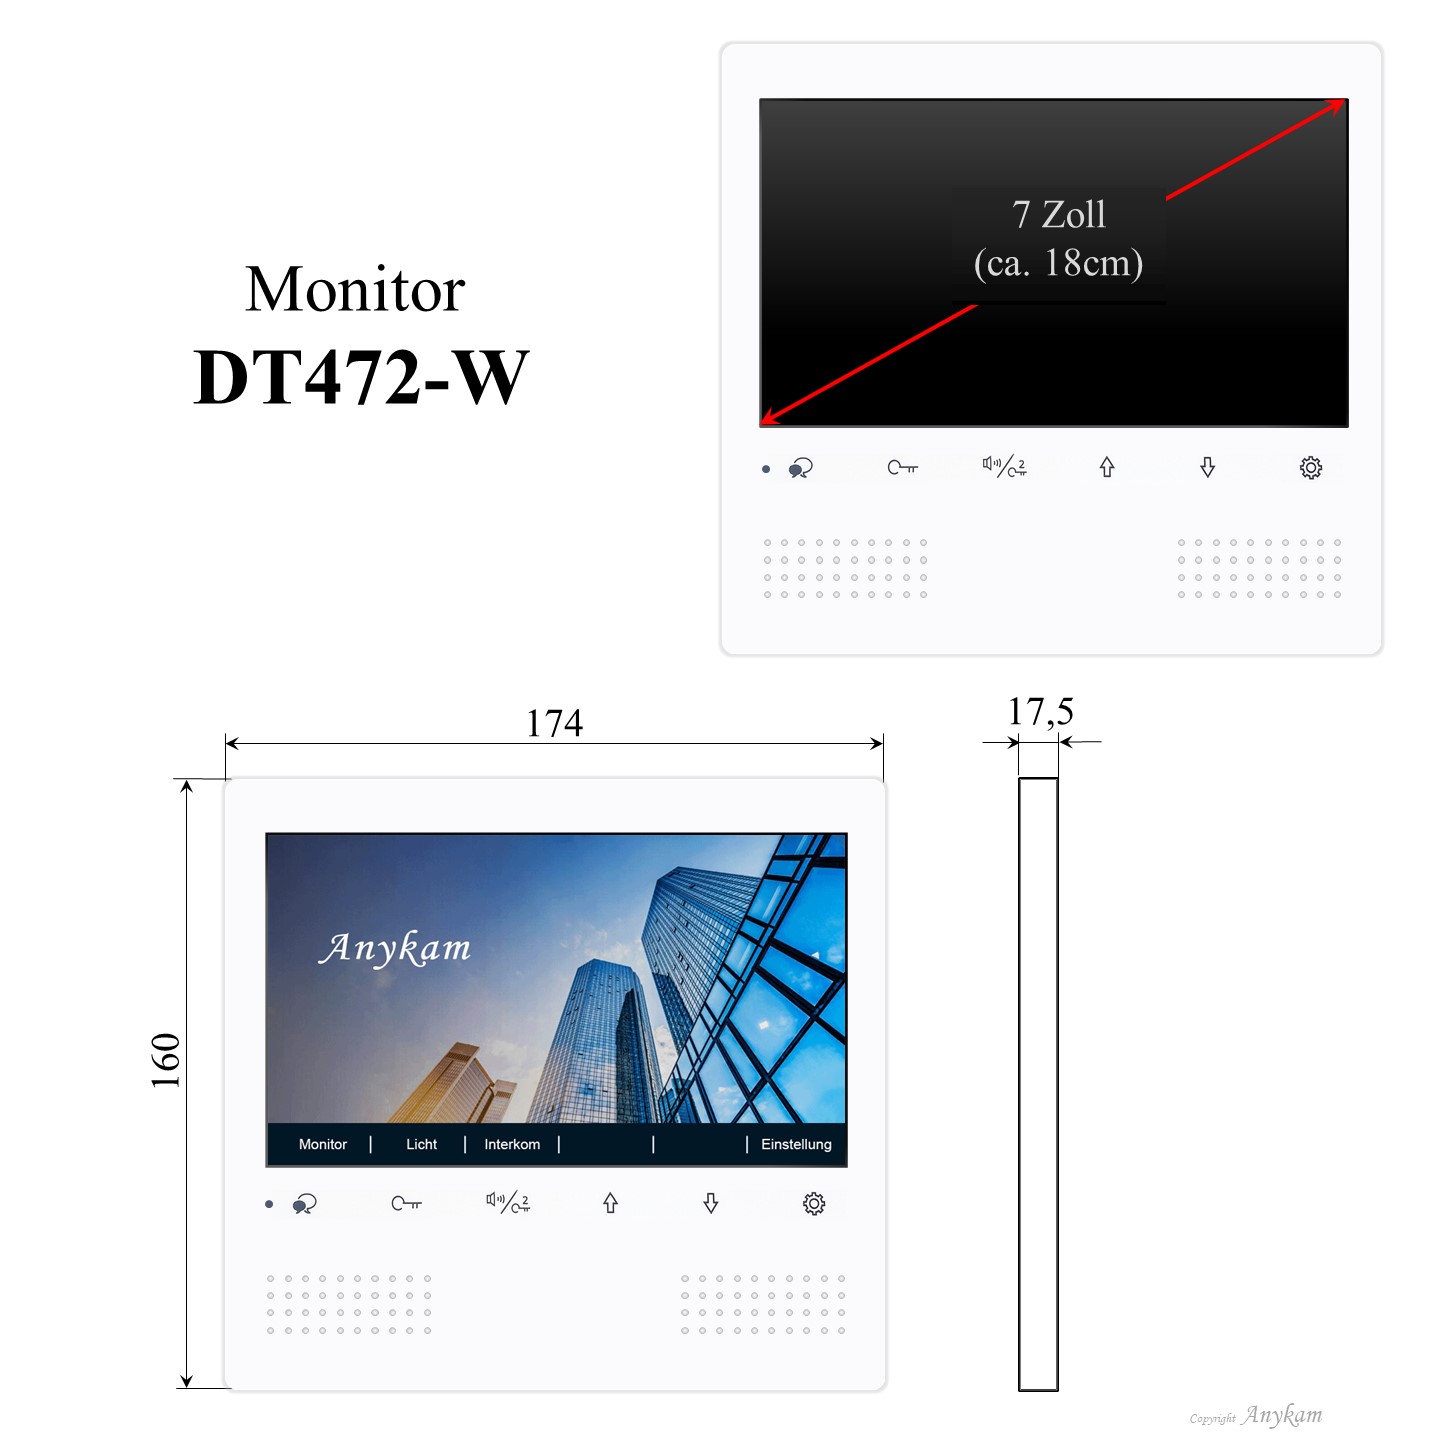 Monitor DT472-W, Innenstation der Videosprechanlage mit 2Draht Technik